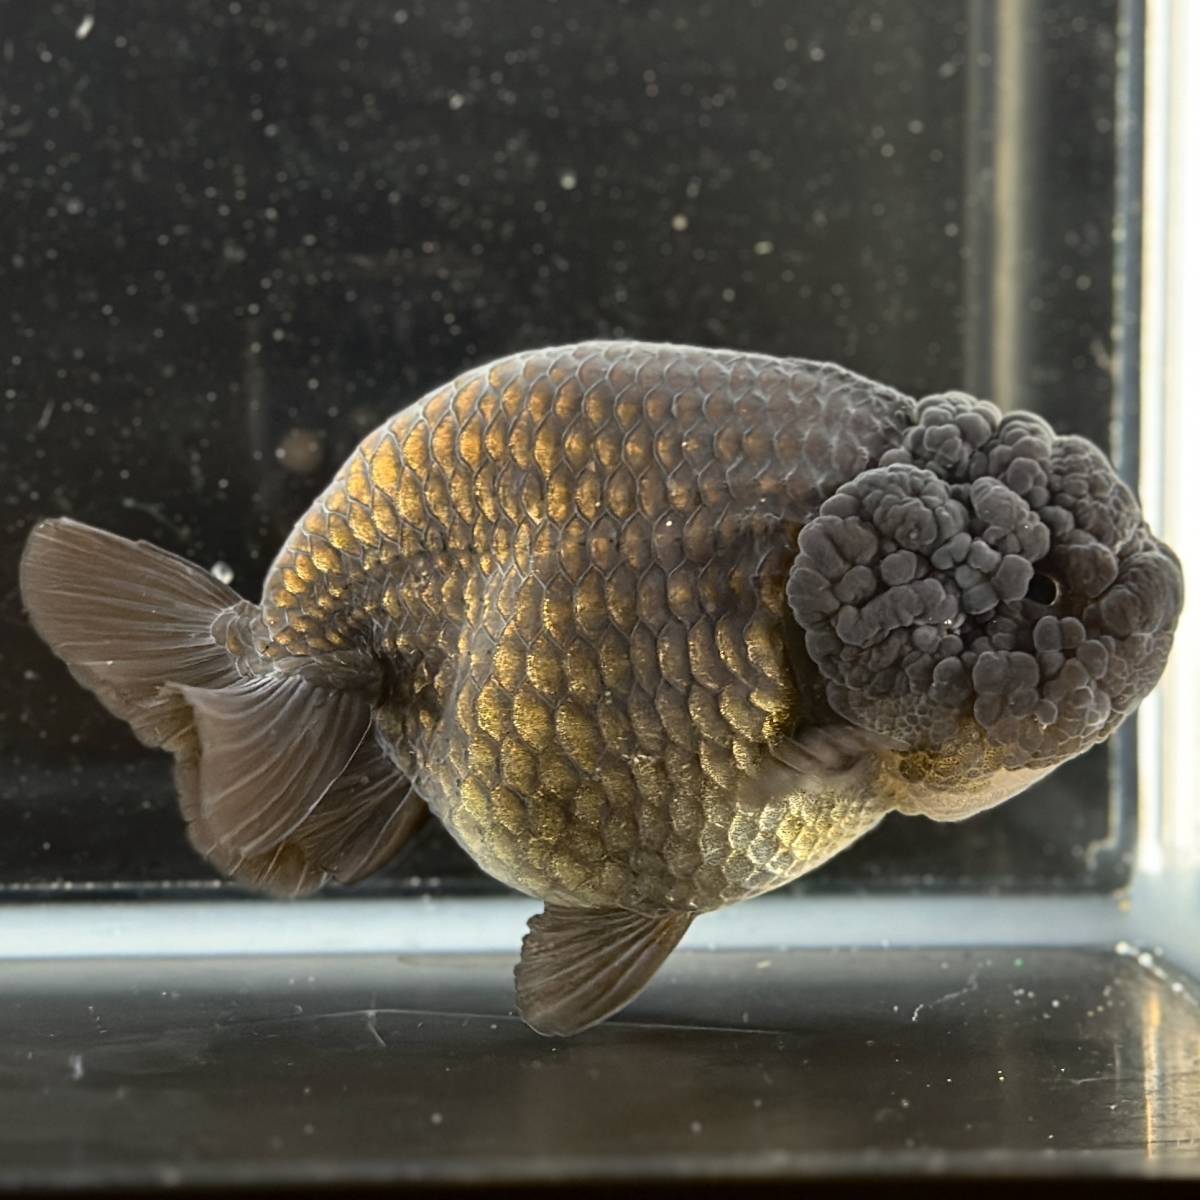  золотая рыбка специализированный магазин [GOOD\'s Gold Fish shop Nagoya ] Thai производство * золотой .* чёрный золотая рыбка * Buffalo золотистый, цвет шампанского 